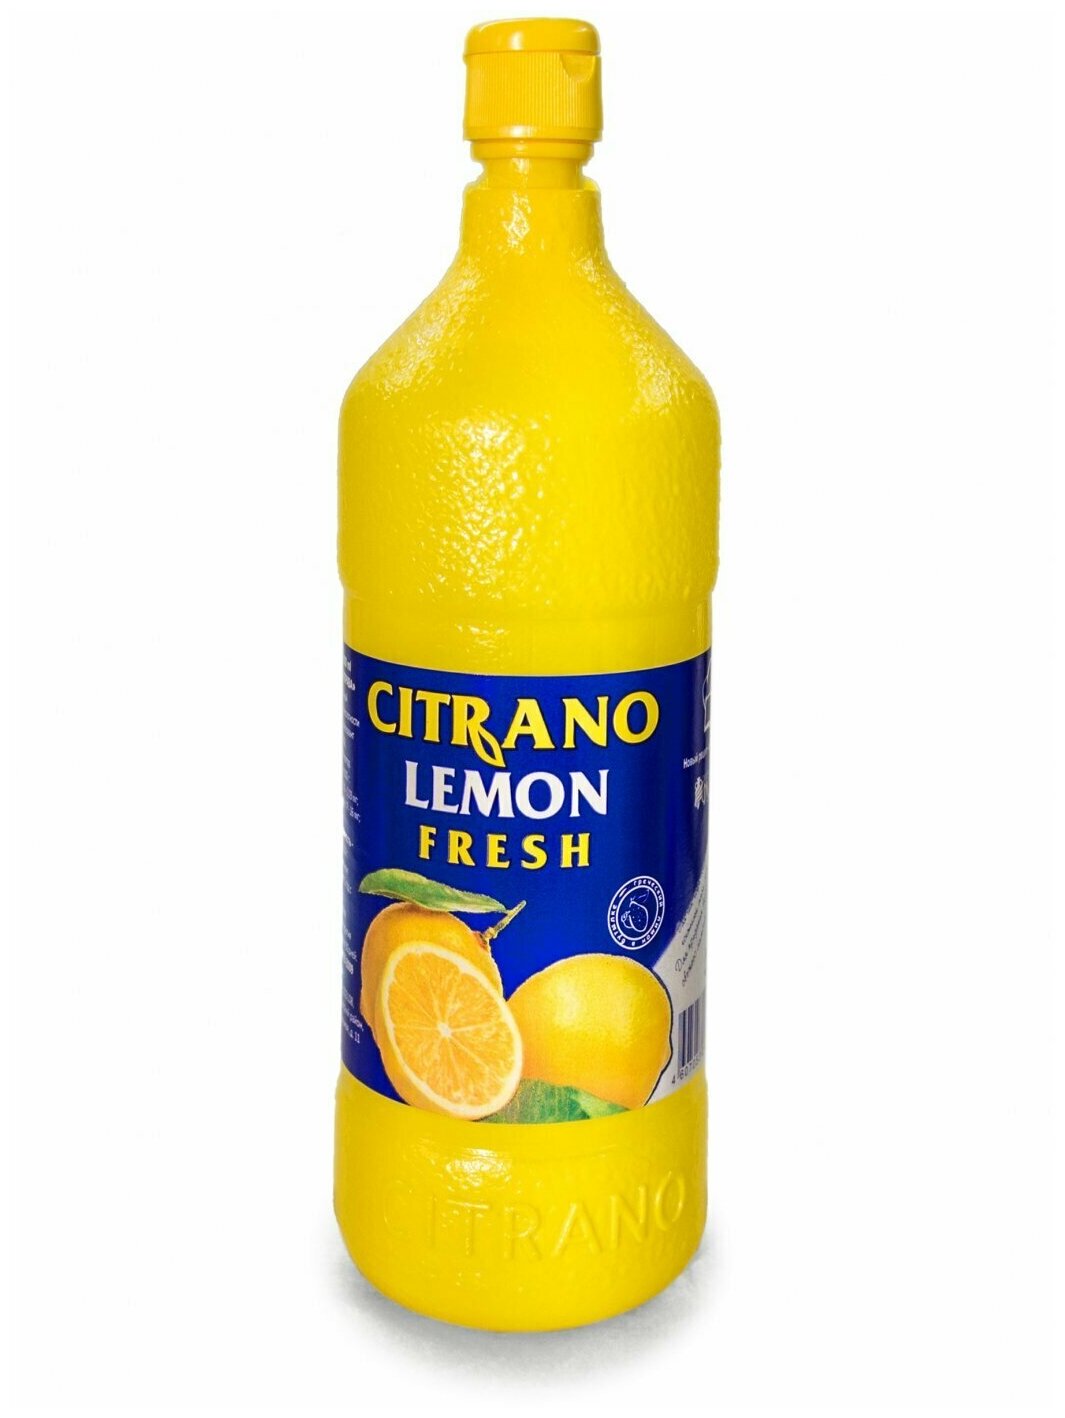 Citrano Сок лимонный концентрированный, 500 мл